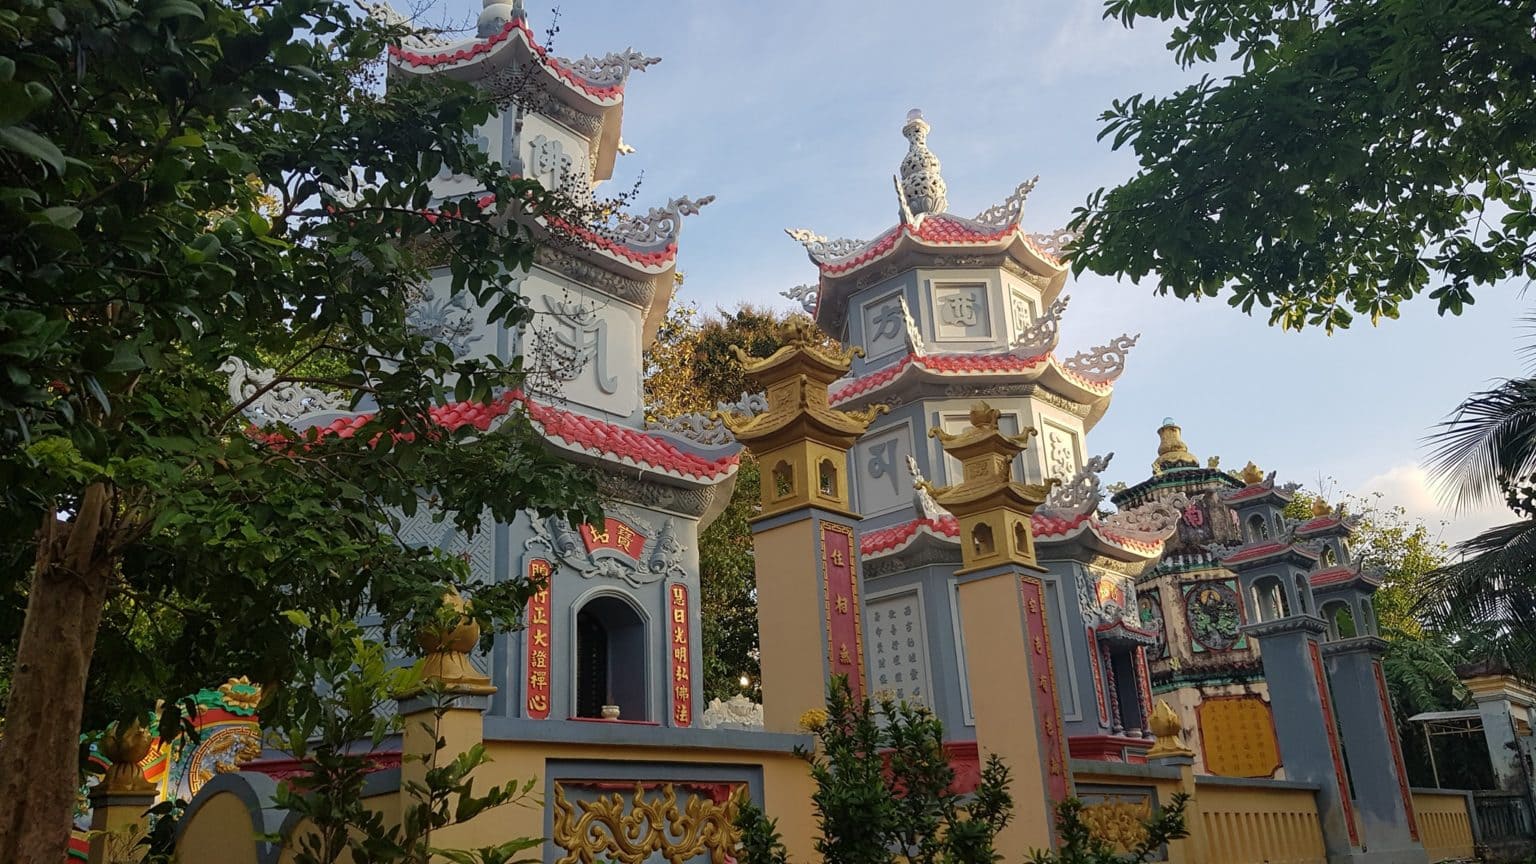 Chiêm ngưỡng vẻ độc đáo của kiến trúc cổ tại chùa Sùng Hưng